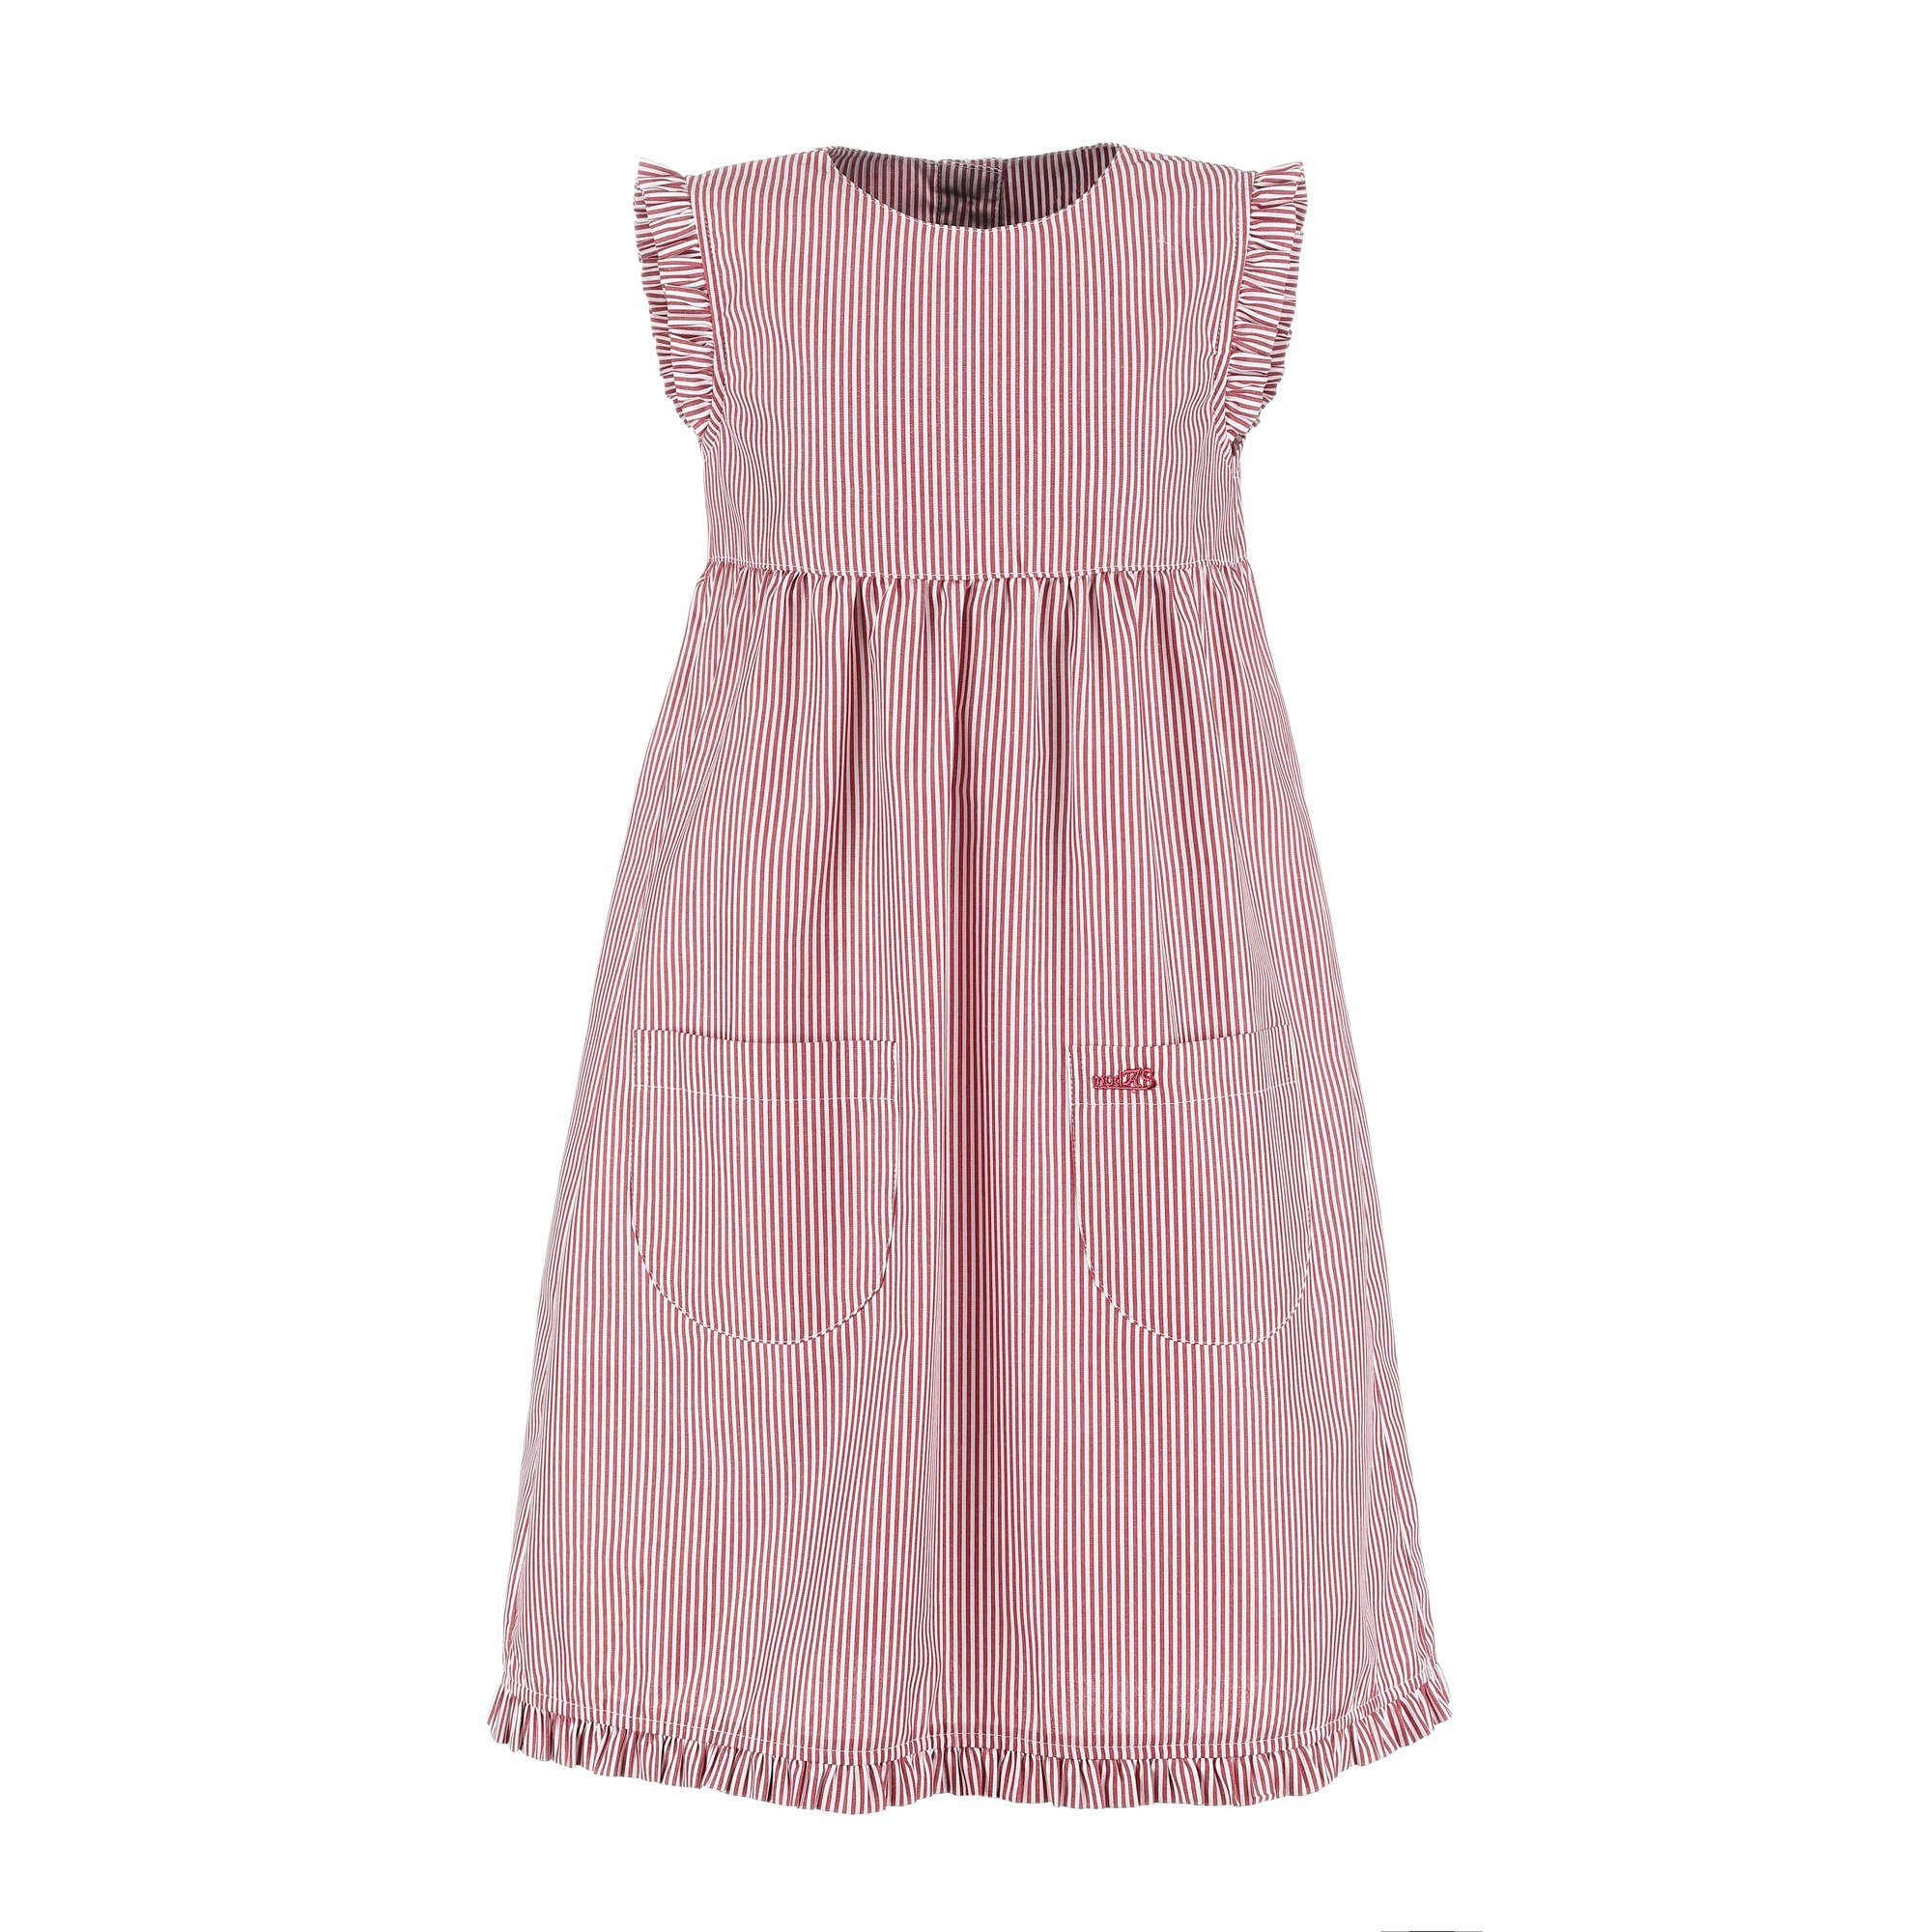 Kleid Mädchenkleid rot/weiß gestreift (023) Kinder gestreift modAS Rüschen - Sommerkleid mit Streifen mit